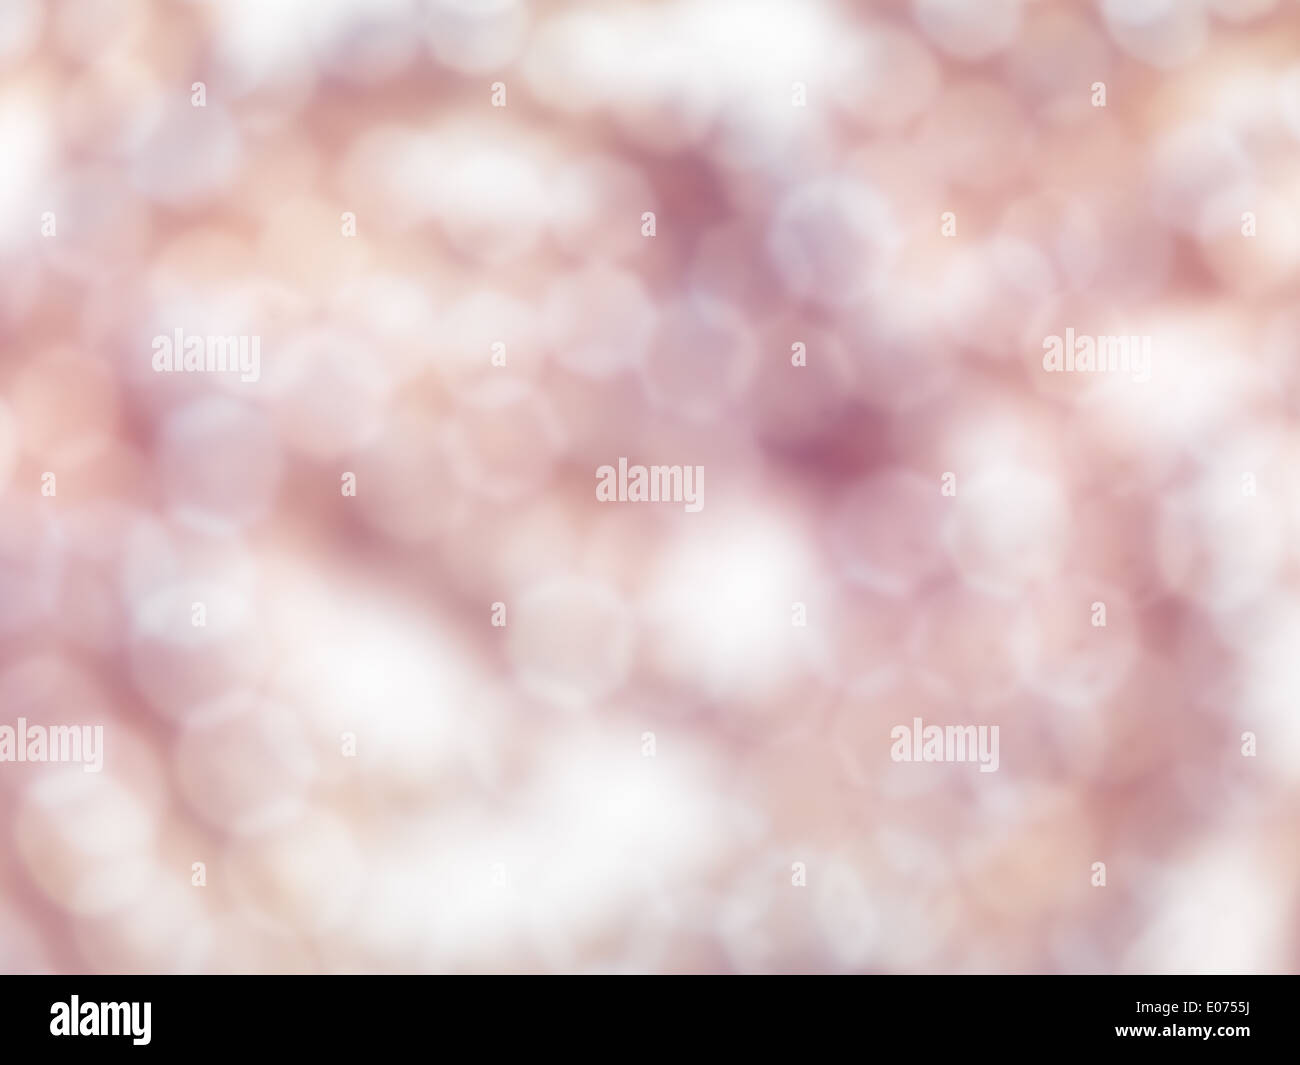 Abstract rosa sfumato lucido fuori fuoco texture di sfondo Foto Stock